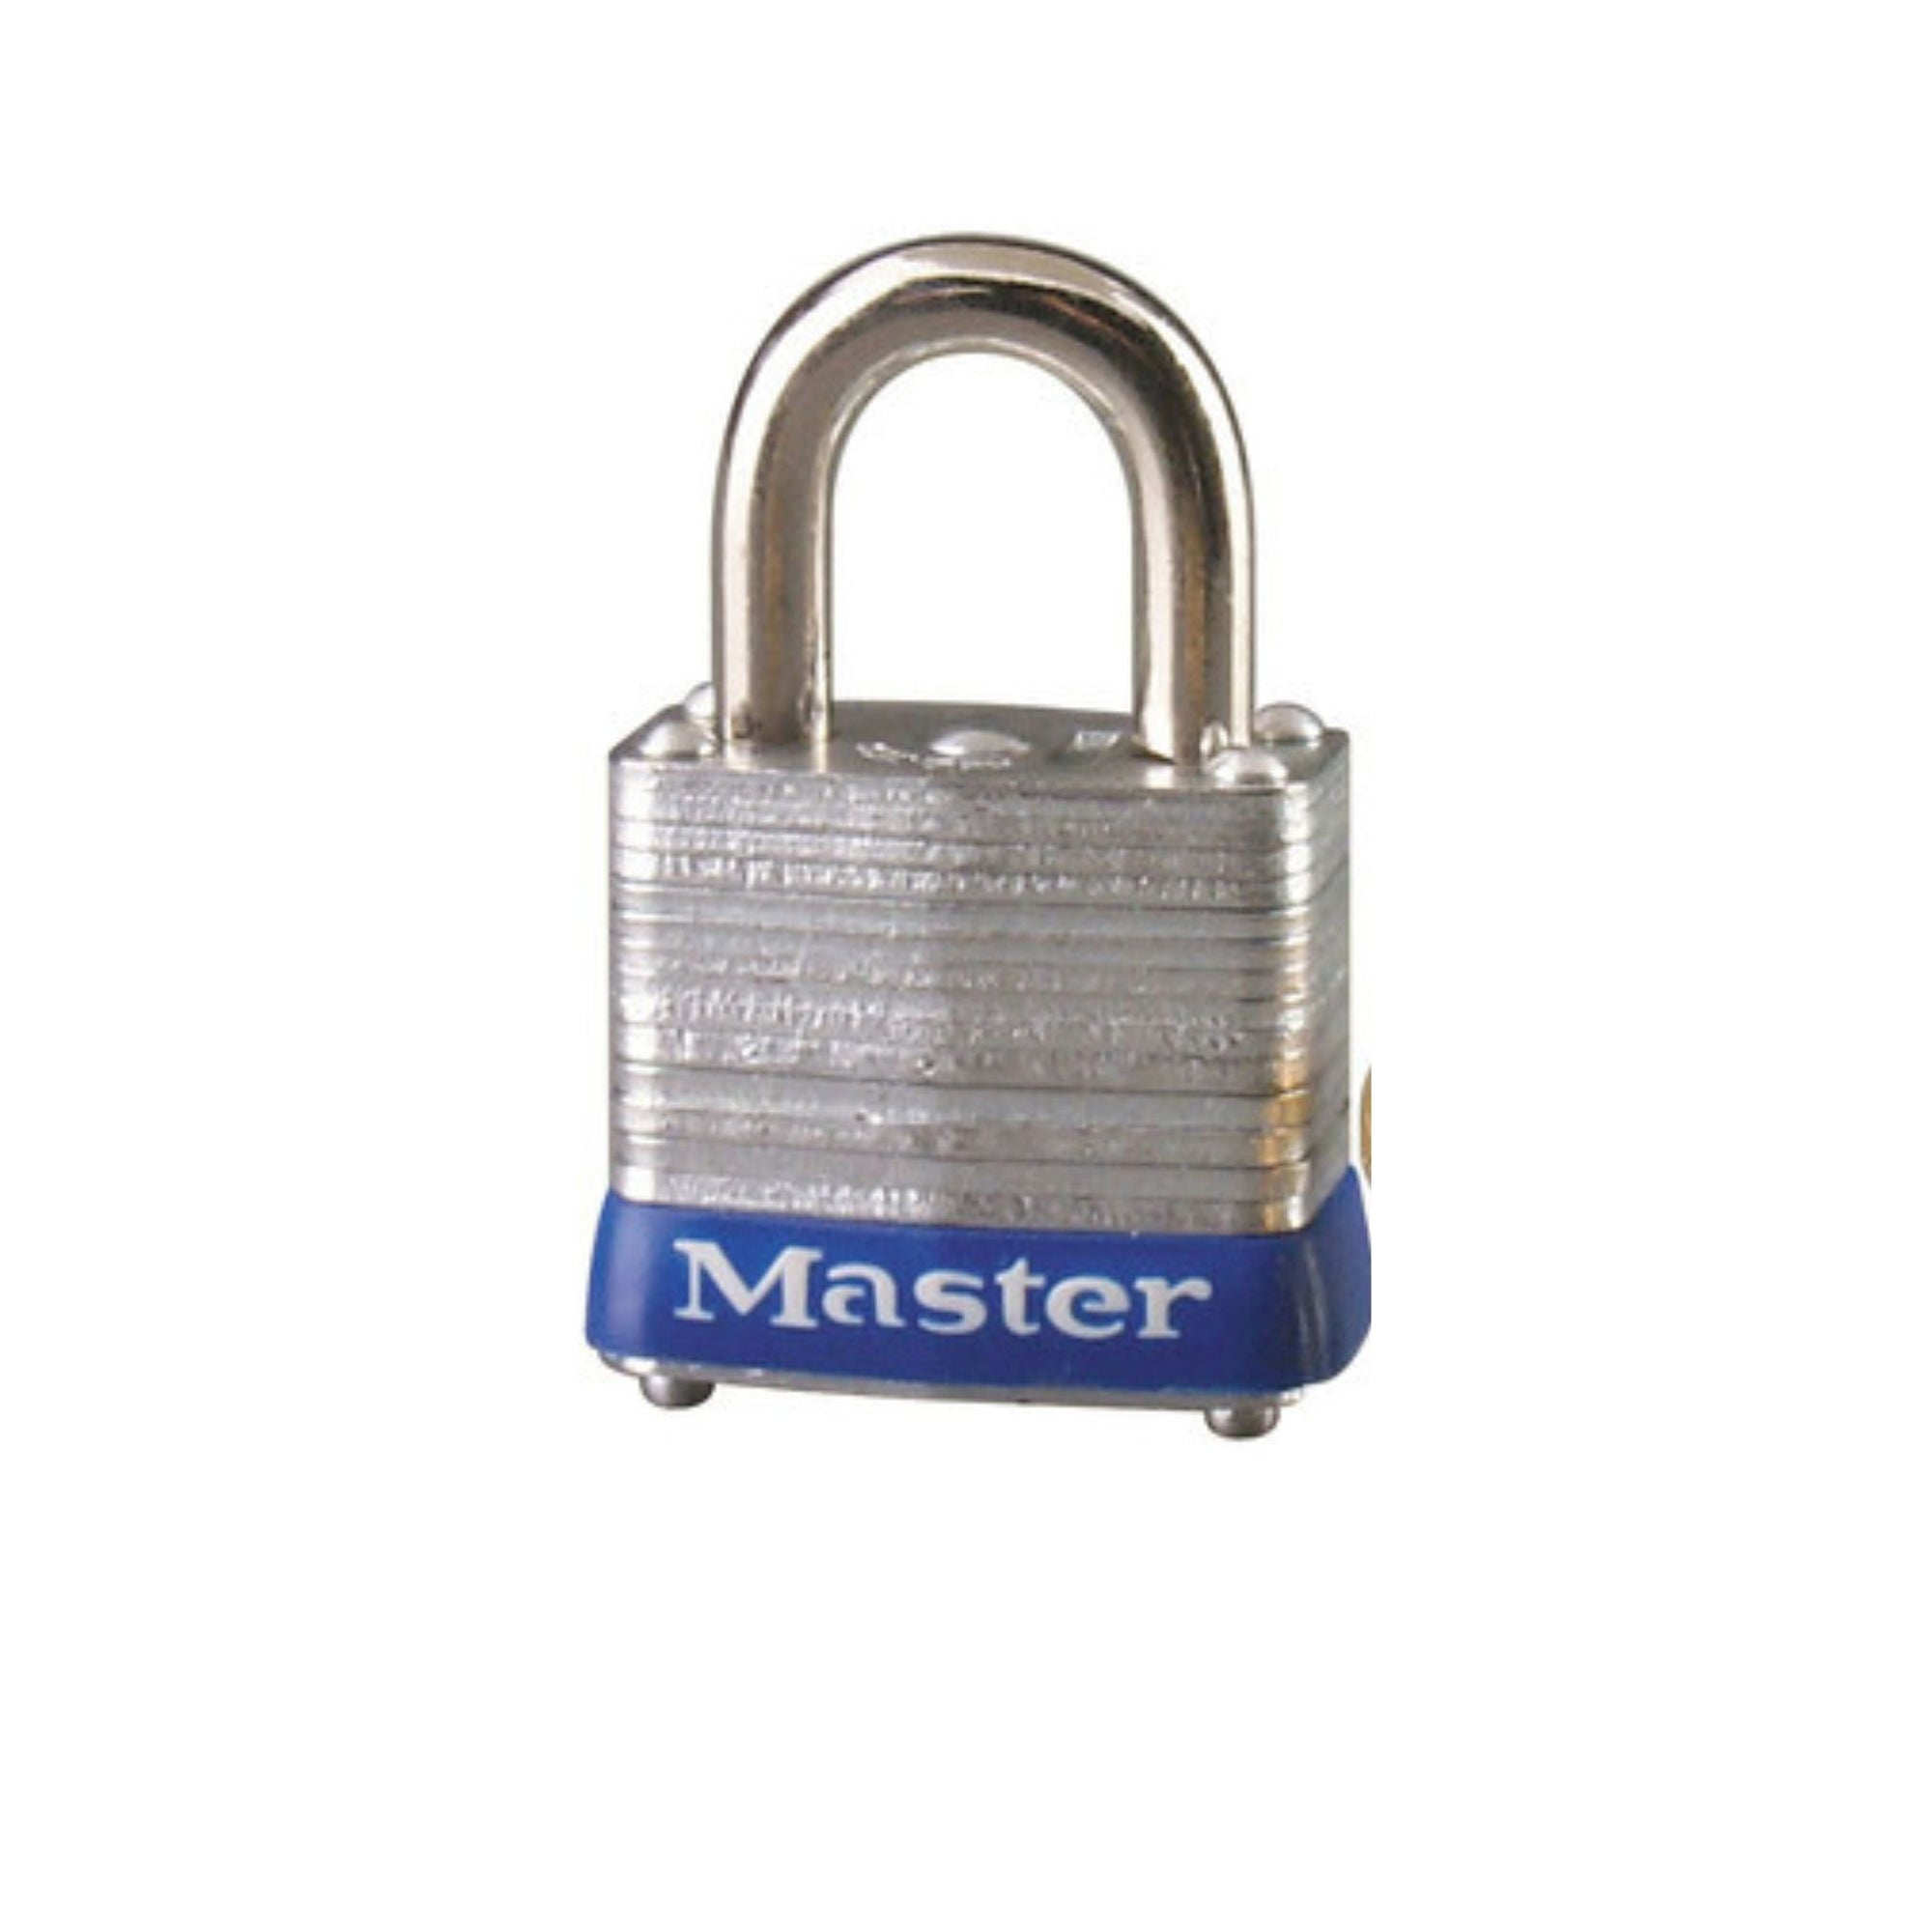 Master Lock 7KA P110 Lock Laminated steel No. 7 Series Padlock Keyed to Match Existing Key Number KAP110 - The Lock Source